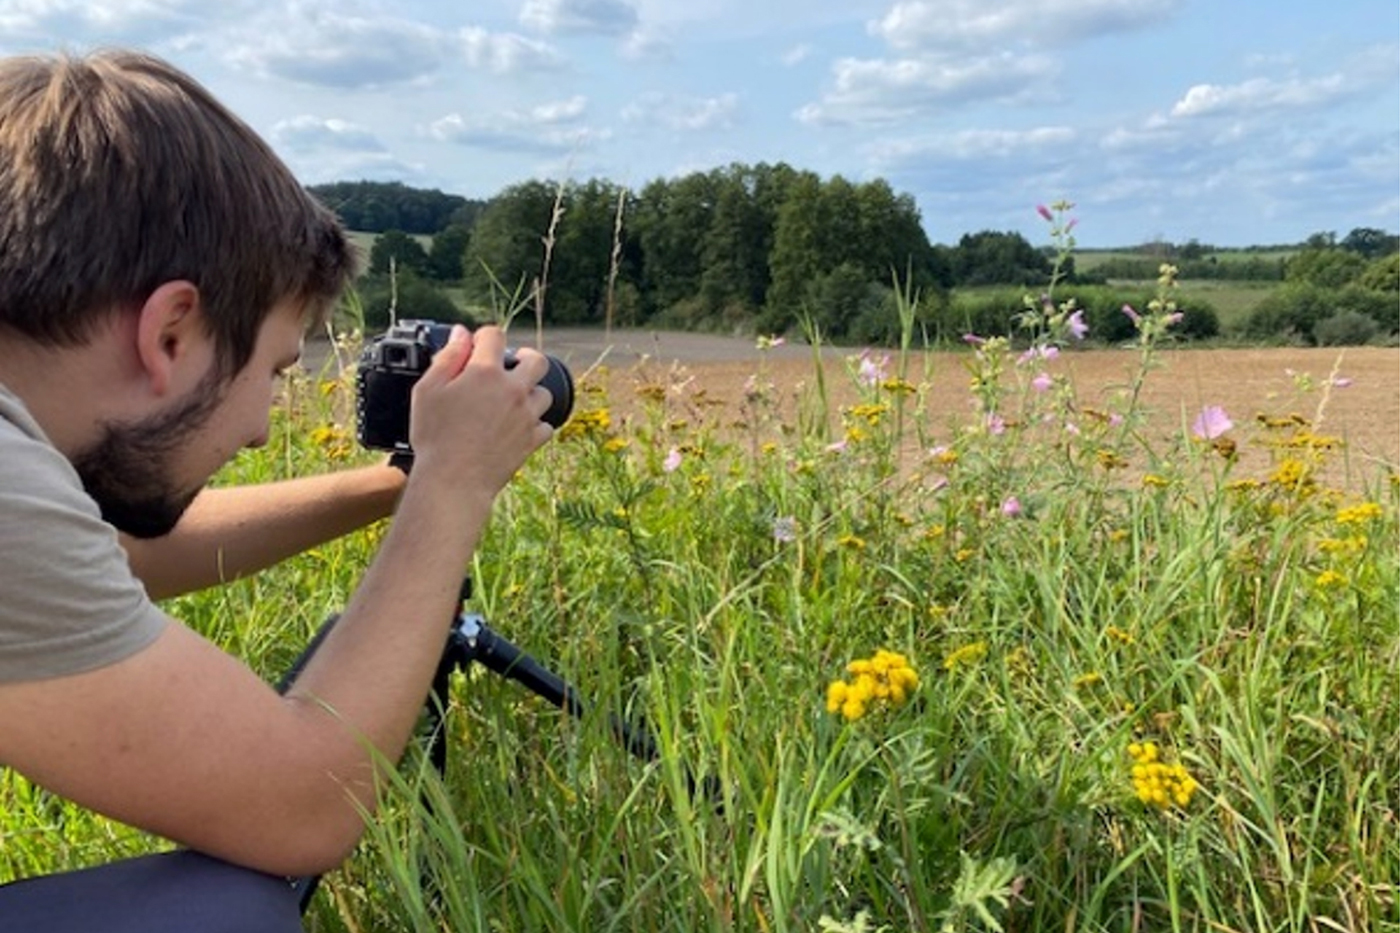 Videoporträts der wichtigsten Schädlinge und Nützlinge an Eiweißpflanzen